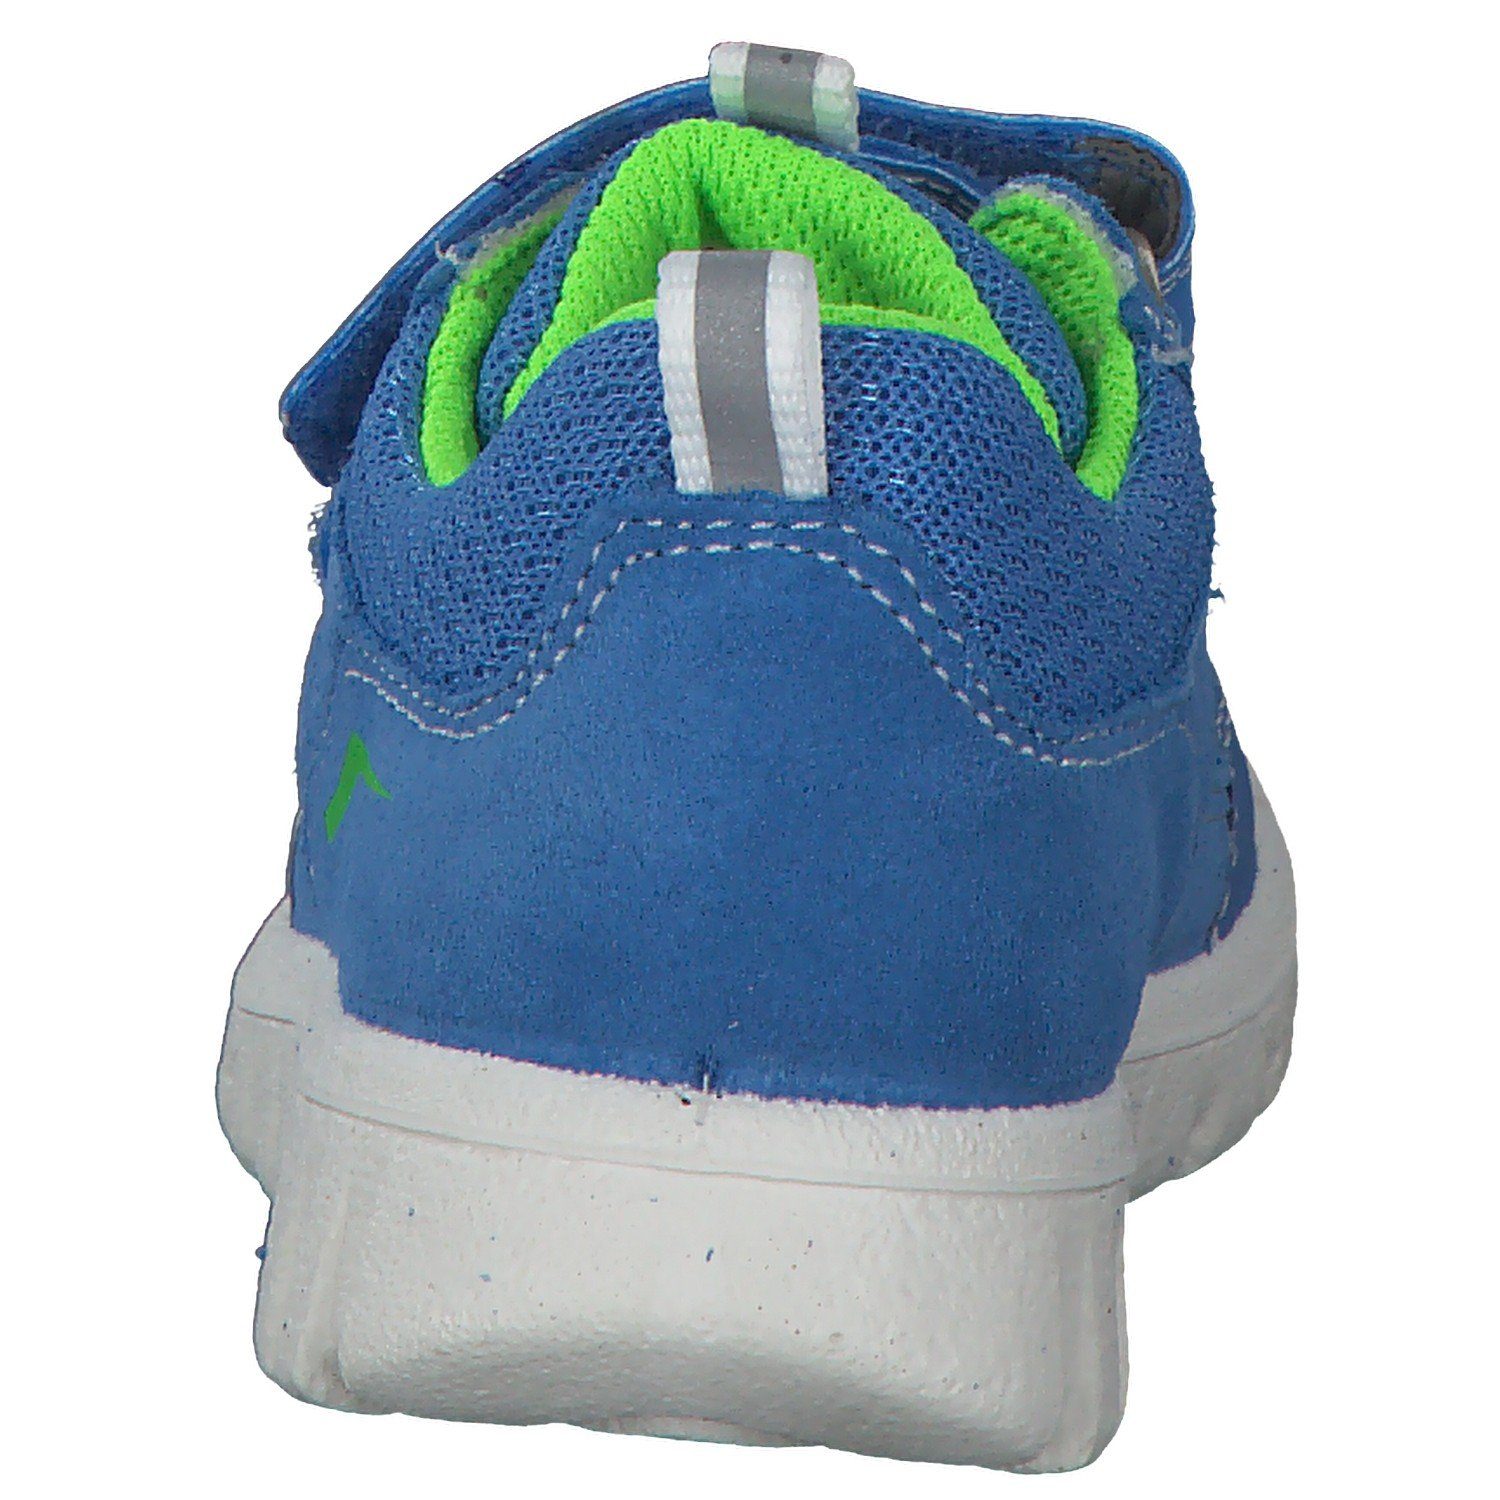 Superfit Sneaker Superfit 06194 M SPORT7 hellblau/grün MINI